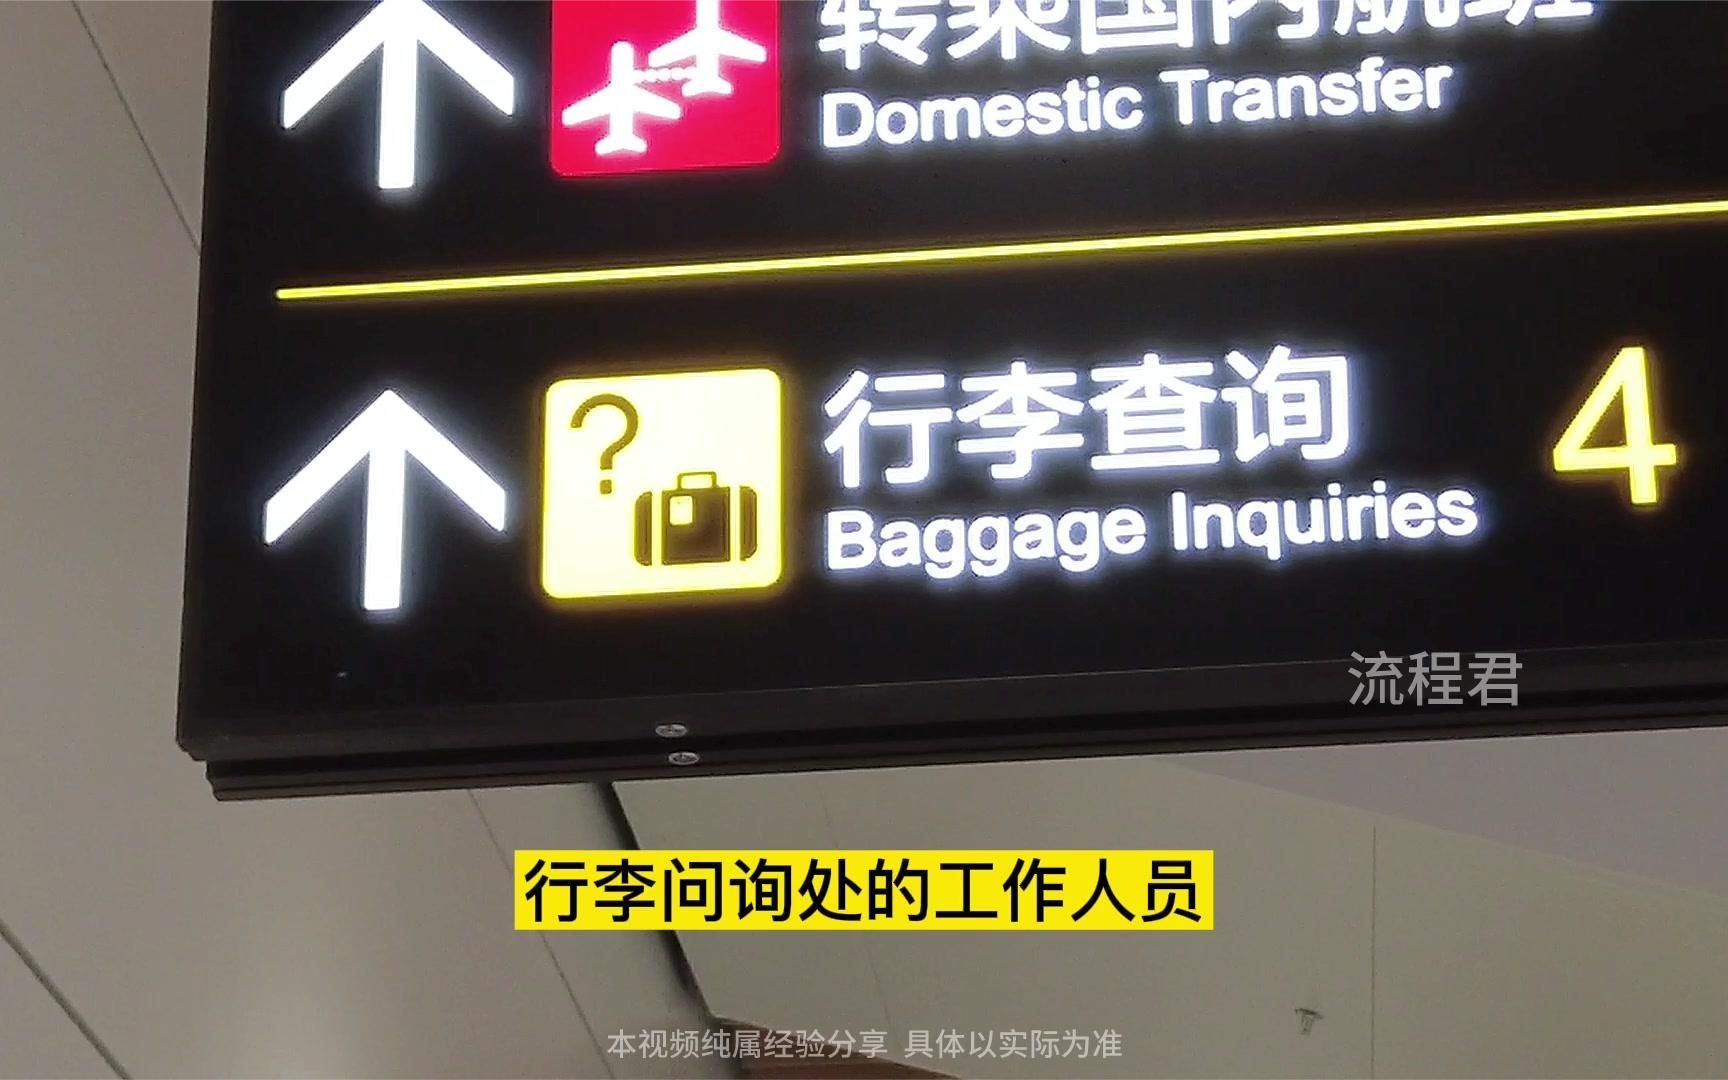 1分钟弄明白，机场托运行李发生损坏丢失怎么办？什么赔偿标准？